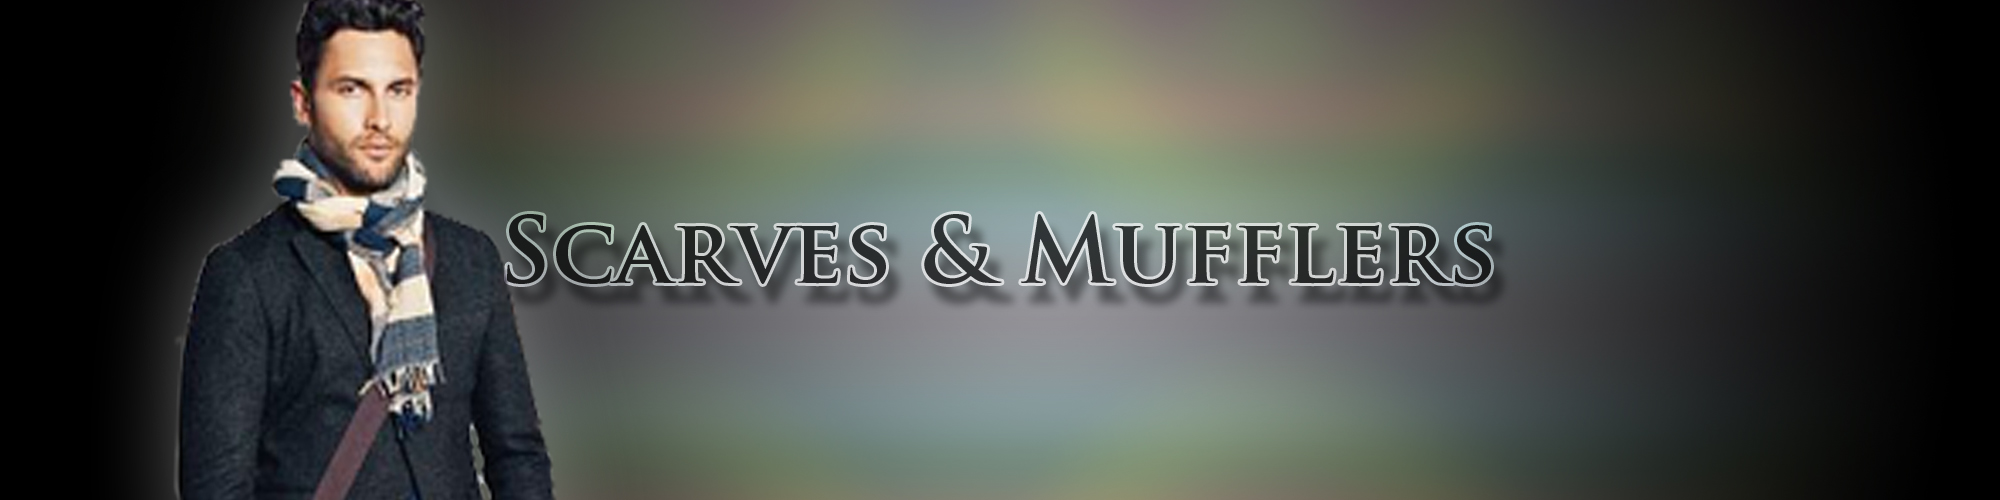 Scarves & Mufflers